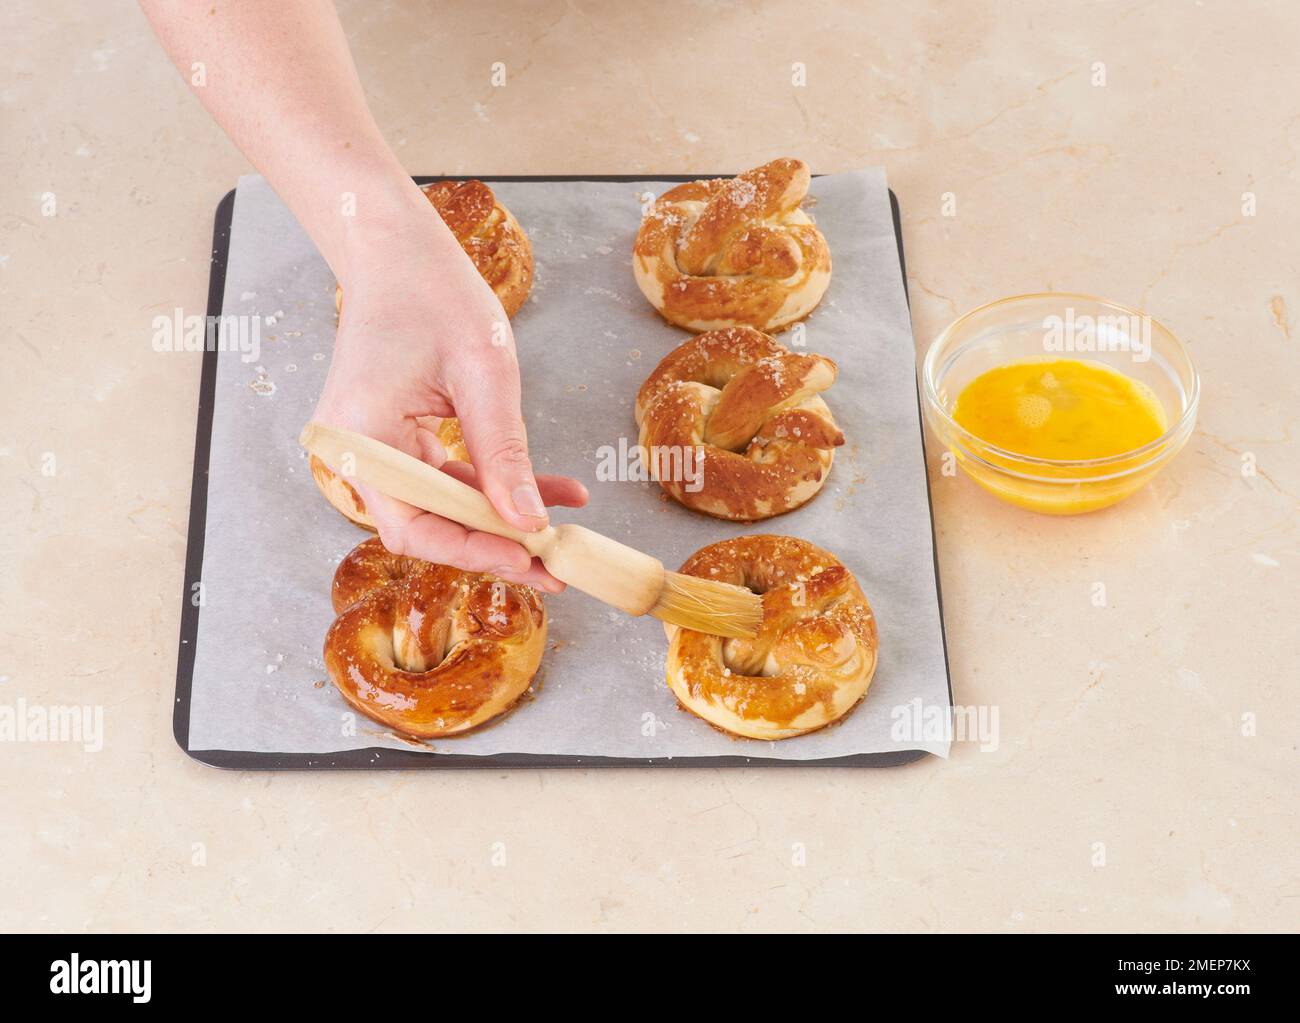 Covering pretzels with egg yoke using basting brush Stock Photo